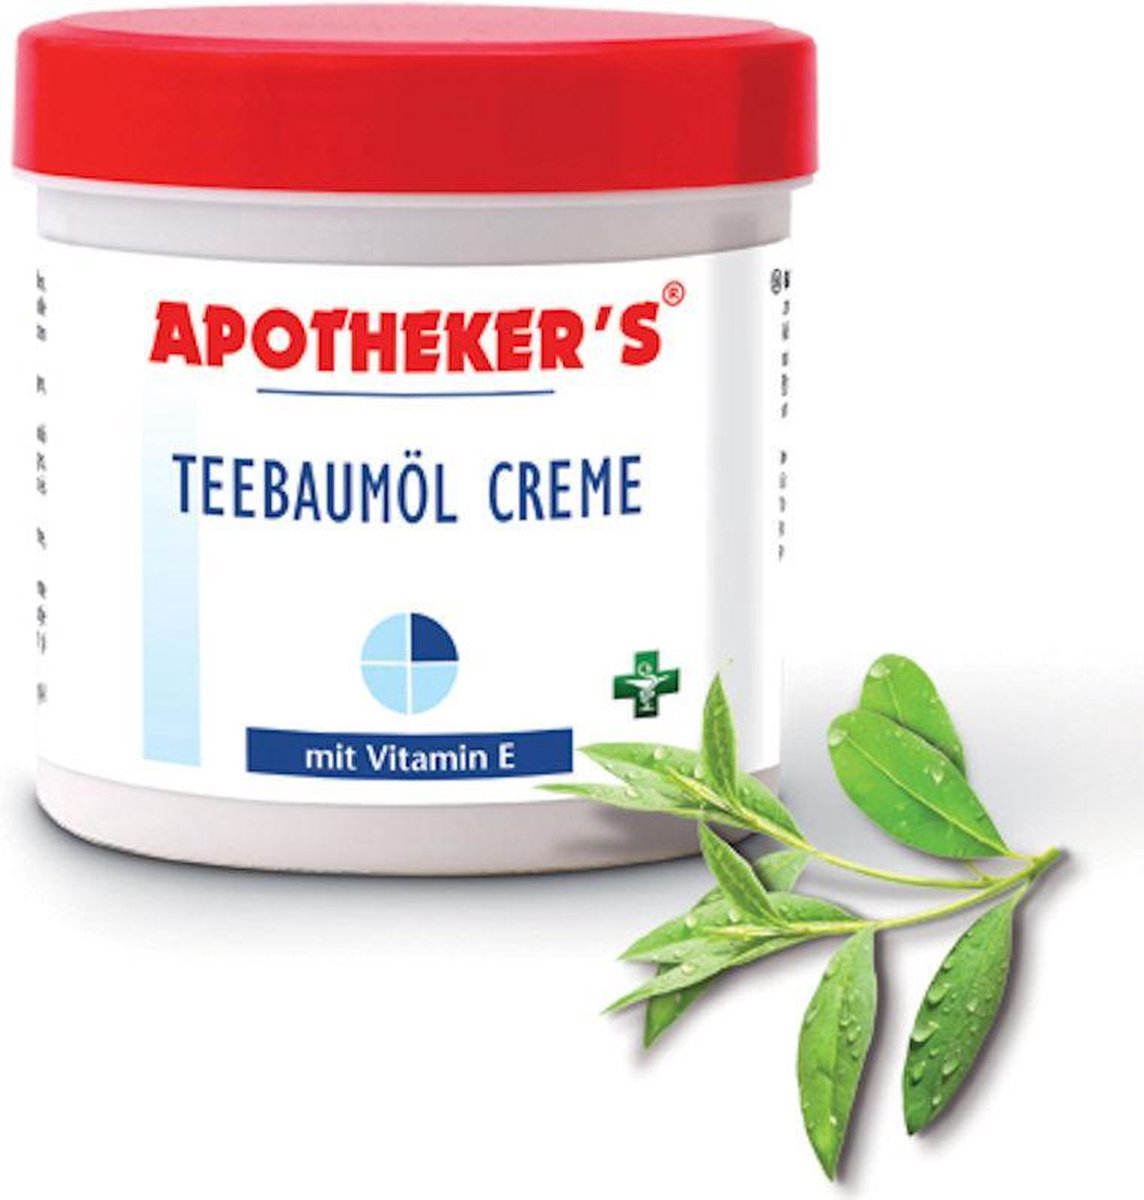 Apotheker´s Teebaumöl Creme met vitamine E en theeboomolie voor een zachte huid